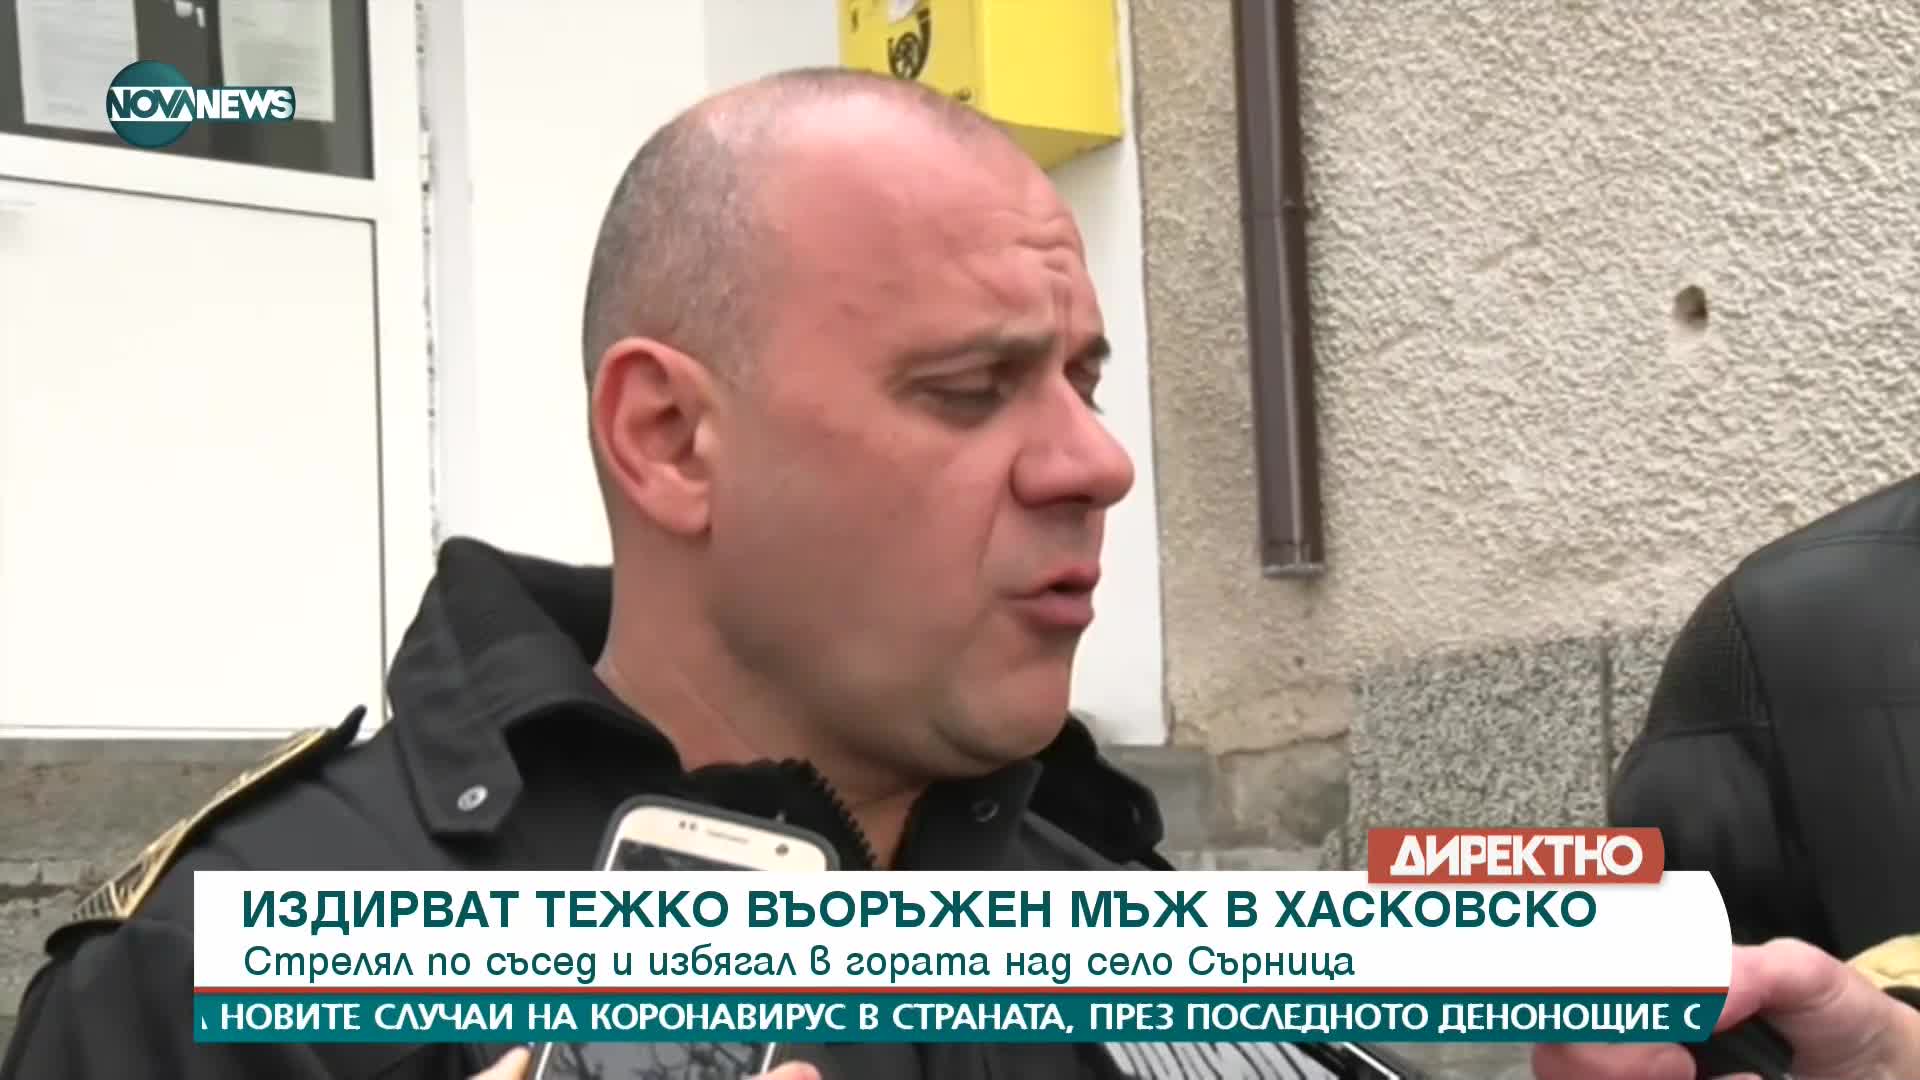 Издирват тежко въоръжен мъж в Хасковско